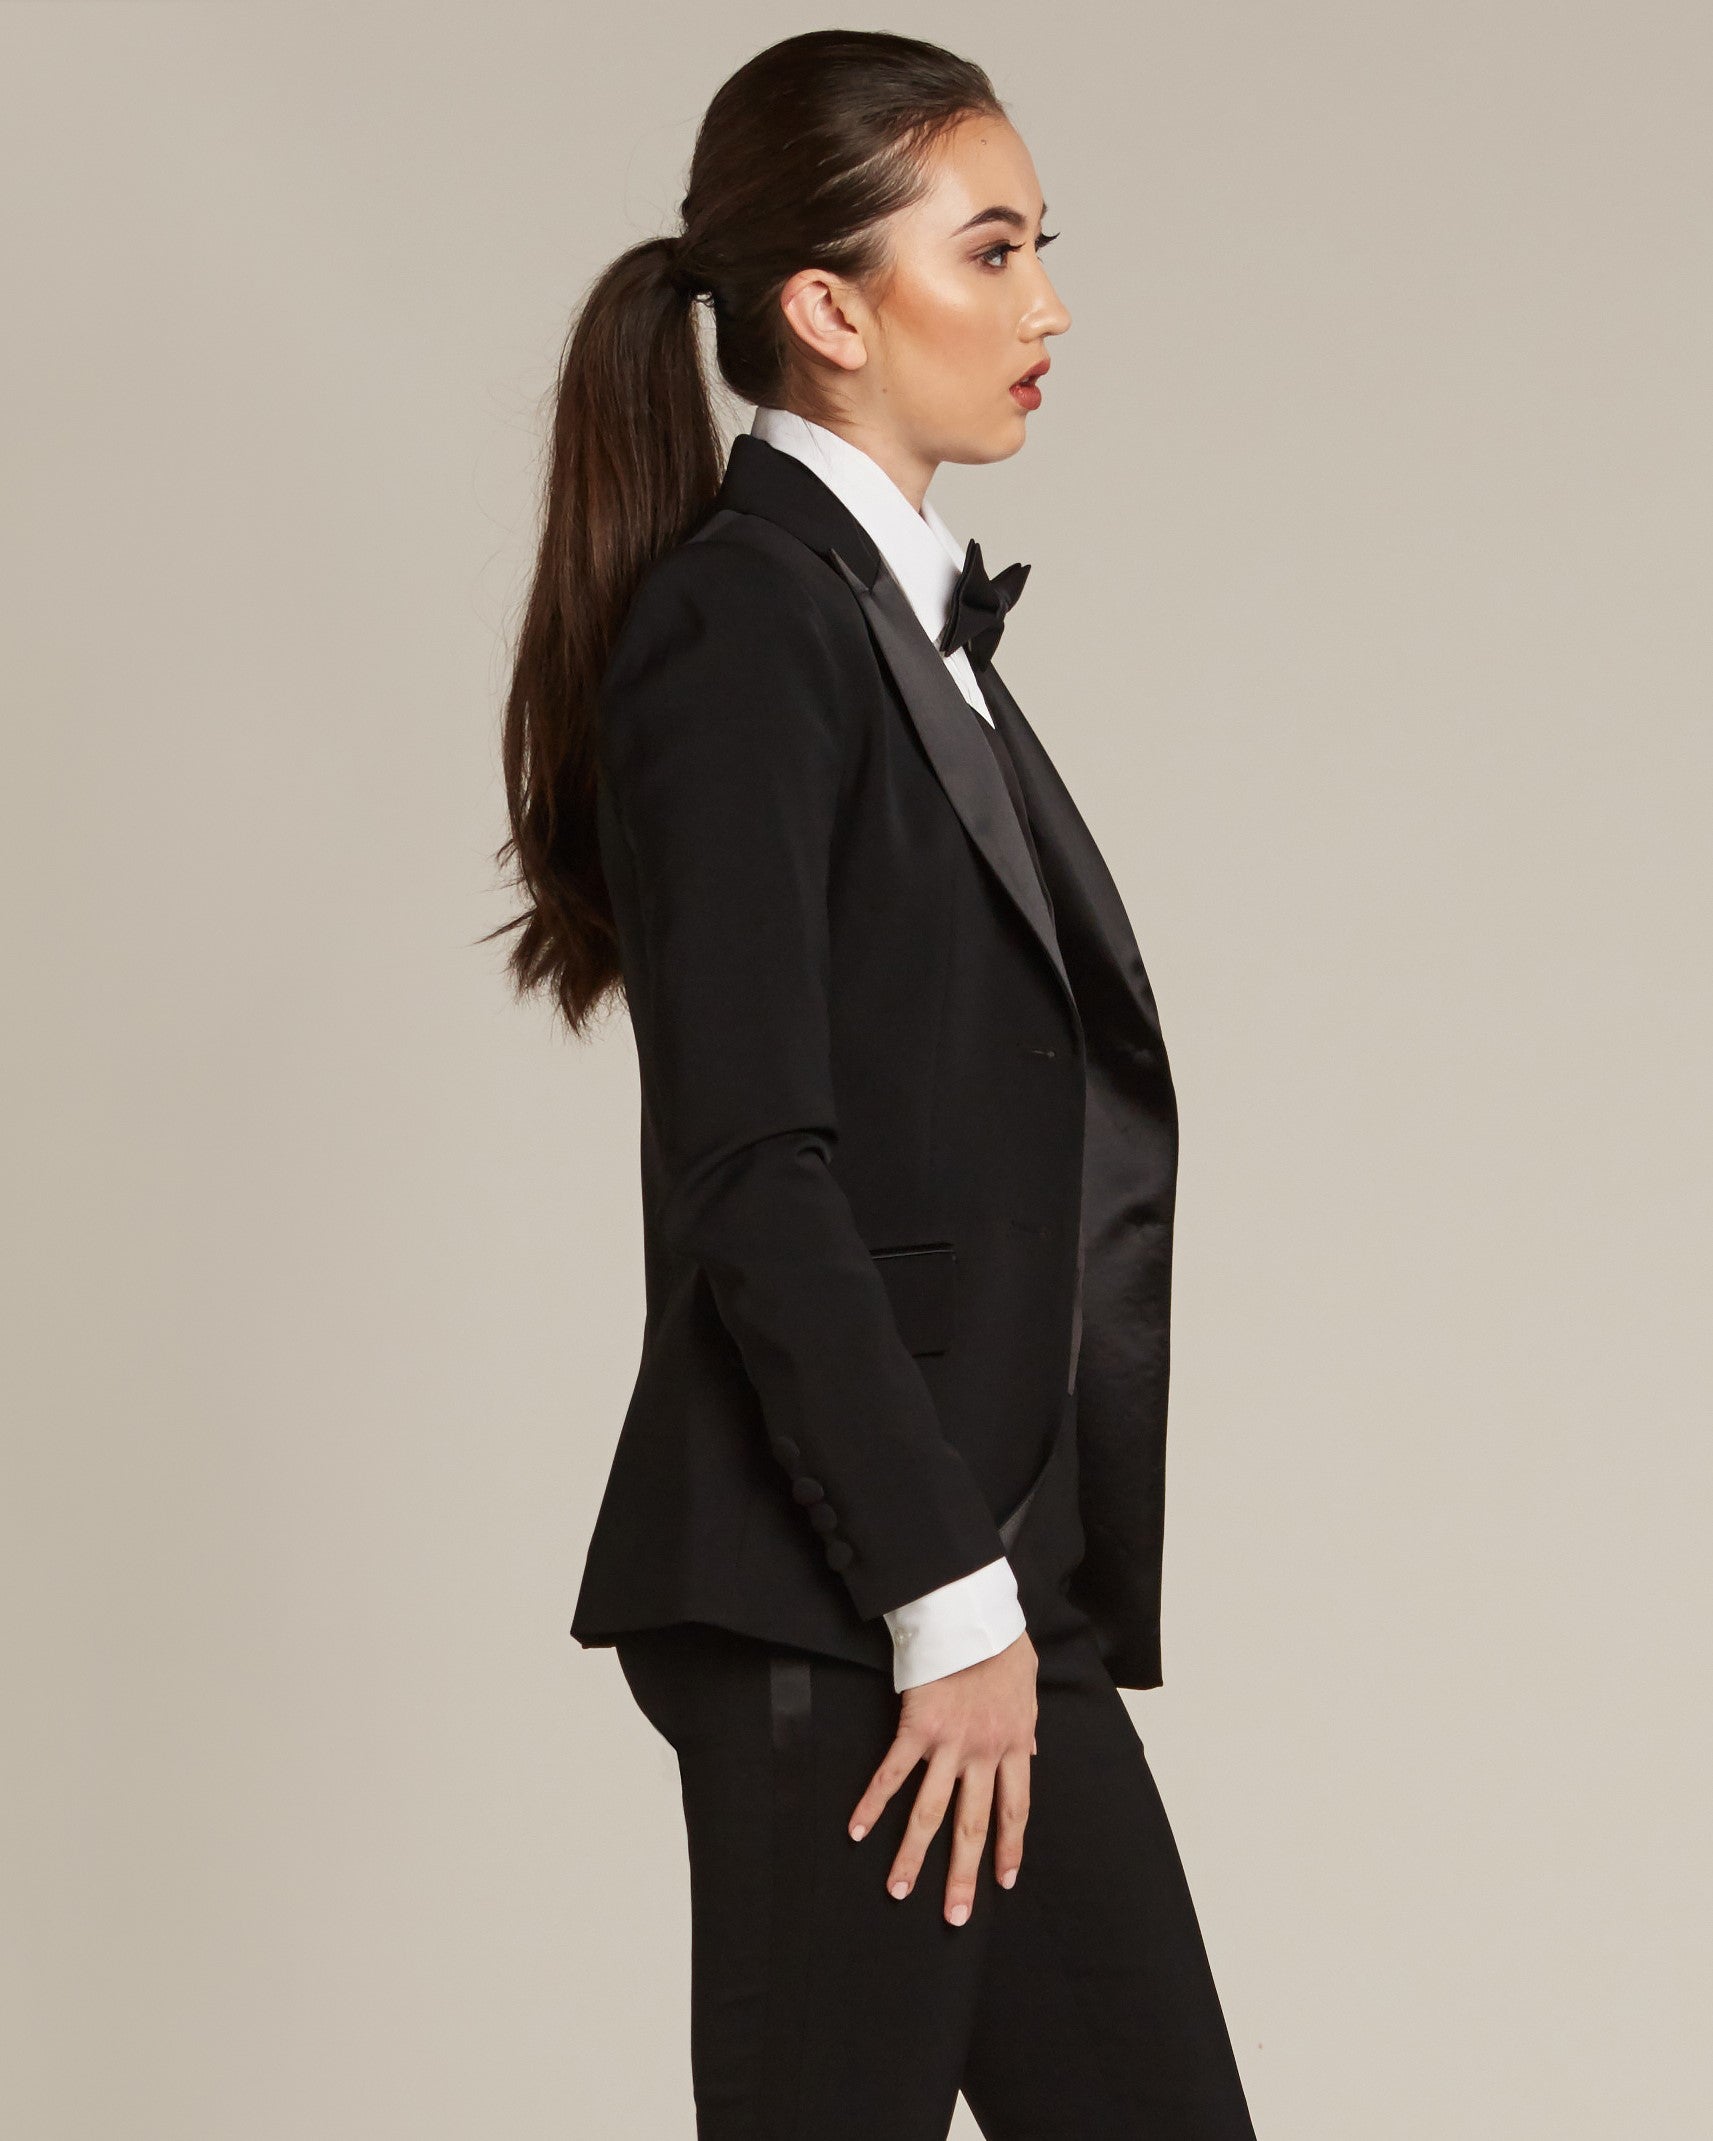 Women’s Black Peak Tuxedo Jacket – Little Black Tux